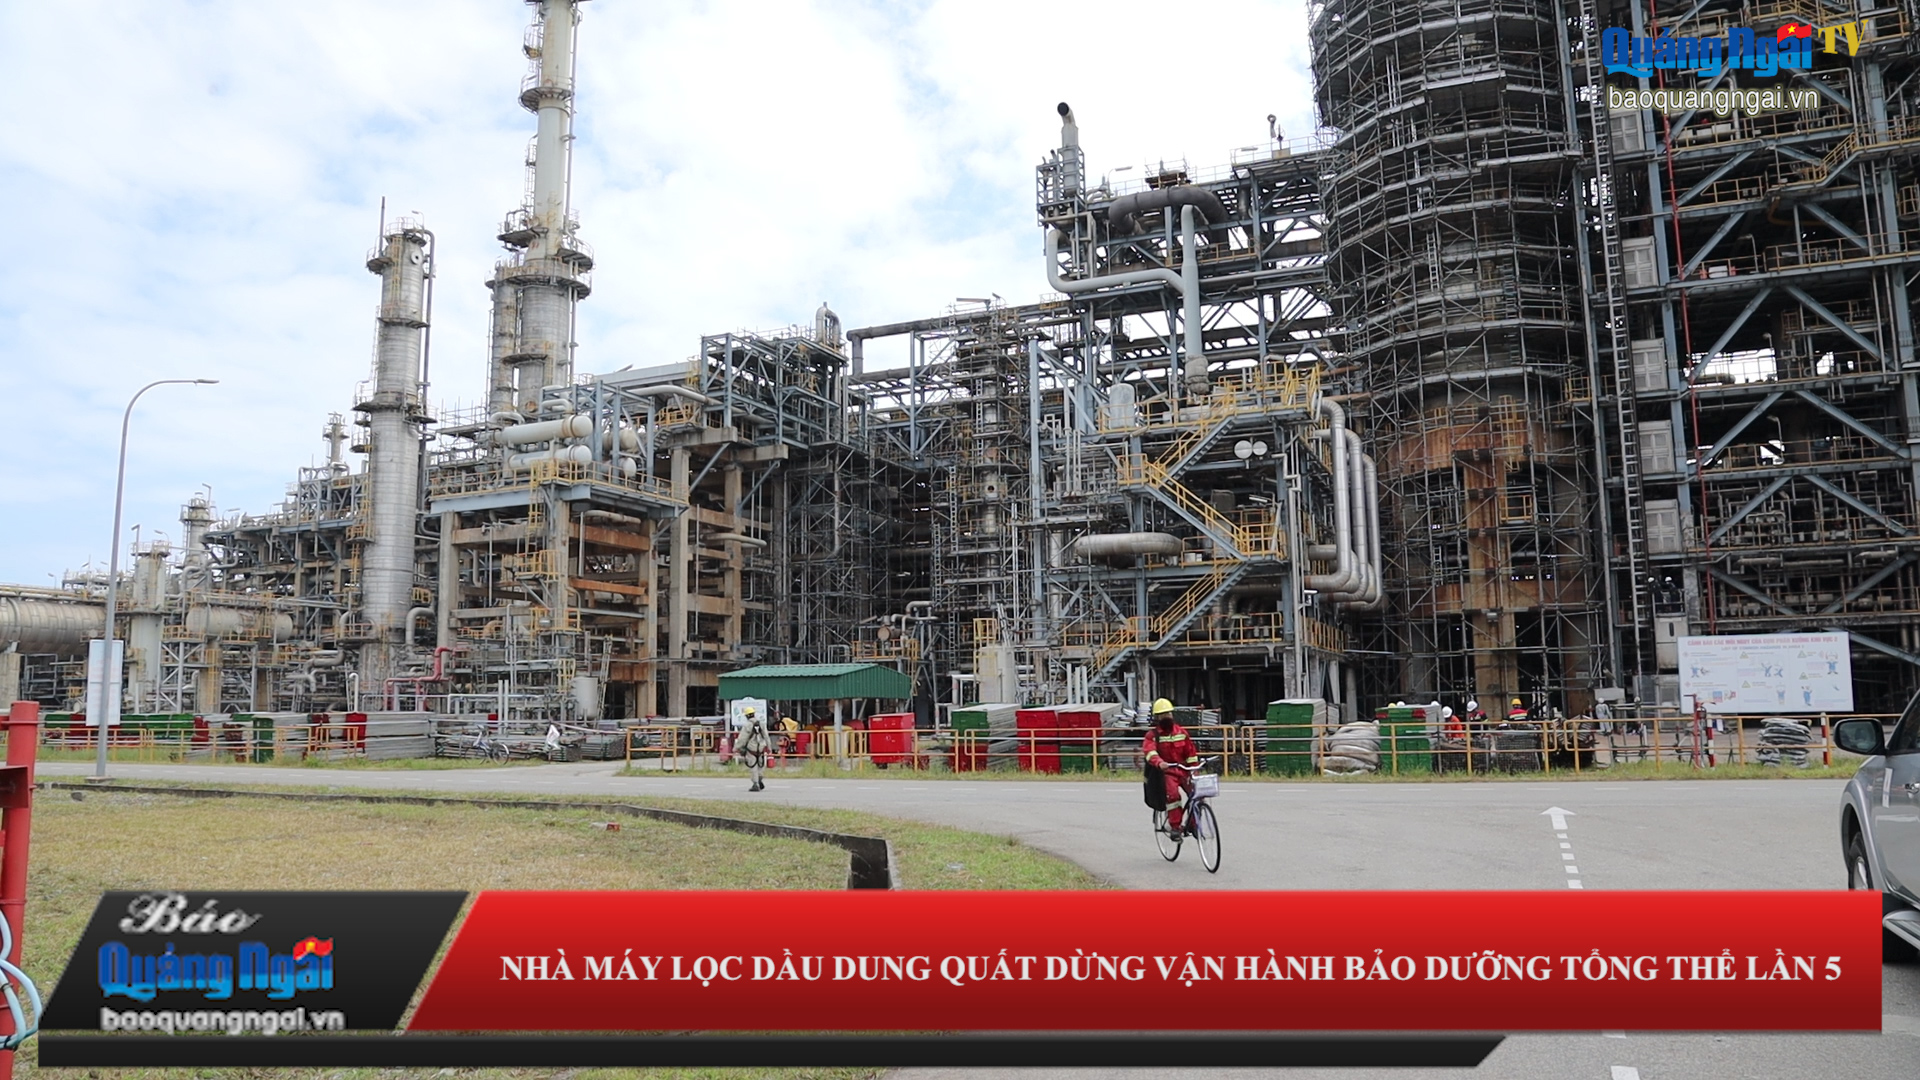 Video: Nhà máy Lọc dầu Dung Quất dừng vận hành, bảo dưỡng tổng thể lần 5